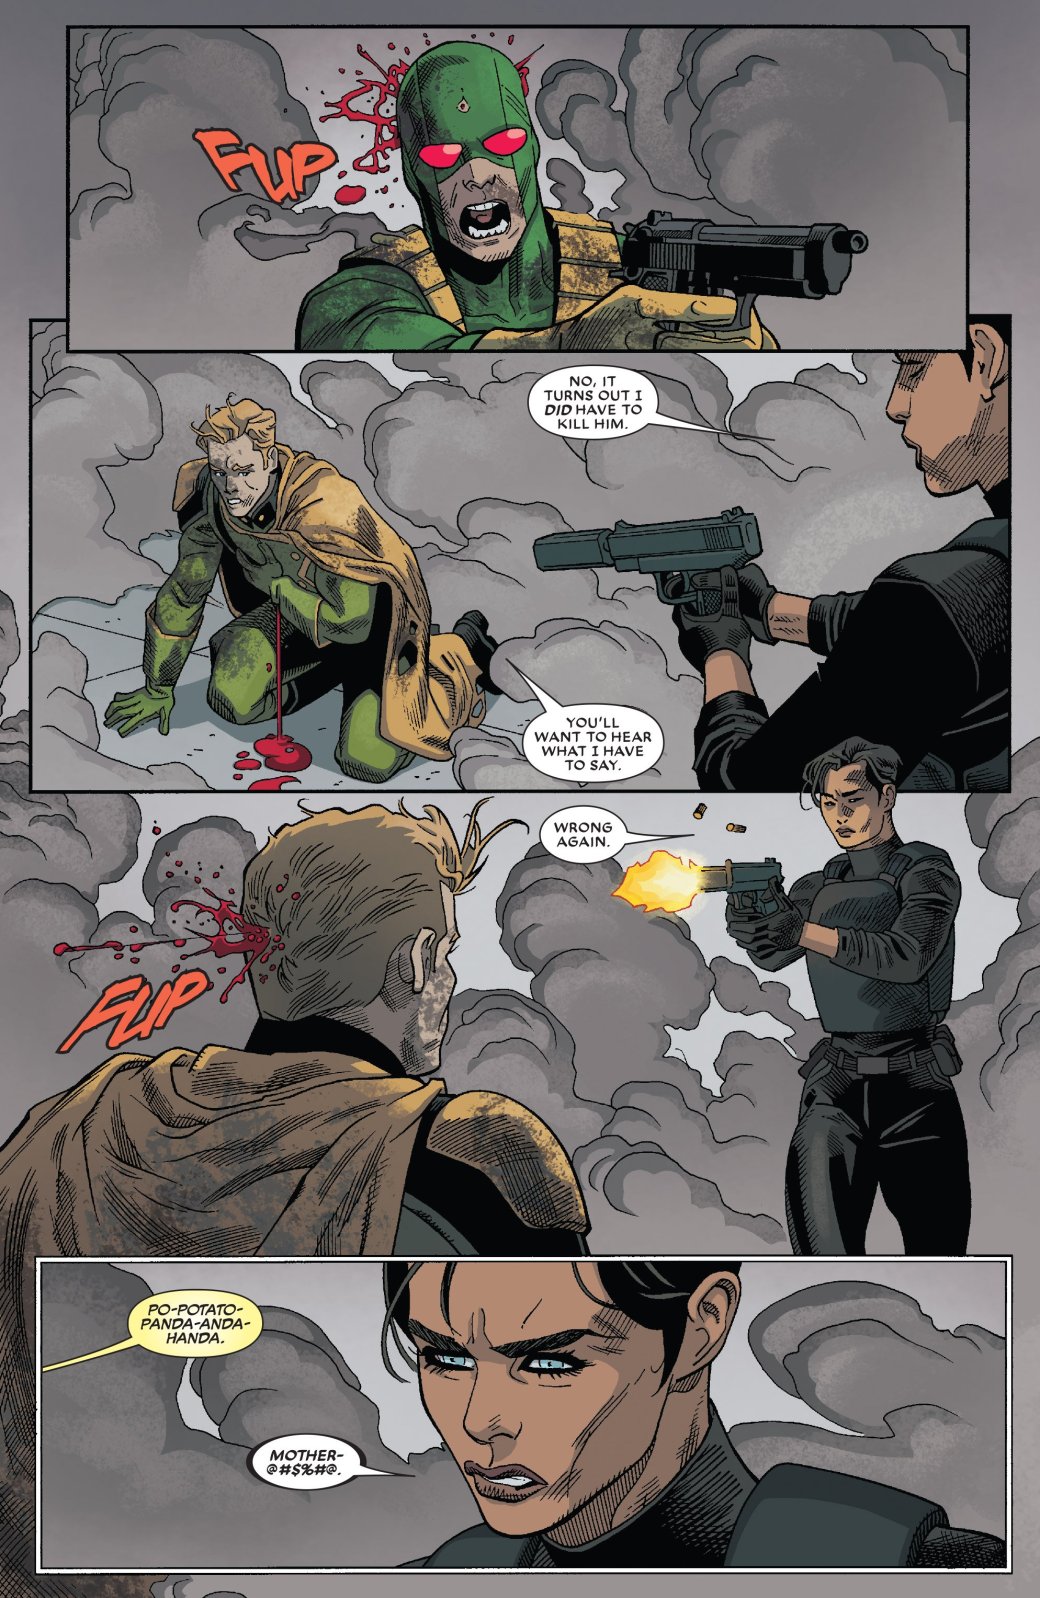 Комикс про Дэдпула подтверждает — теперь у Marvel два Капитана Америка. - Изображение 2